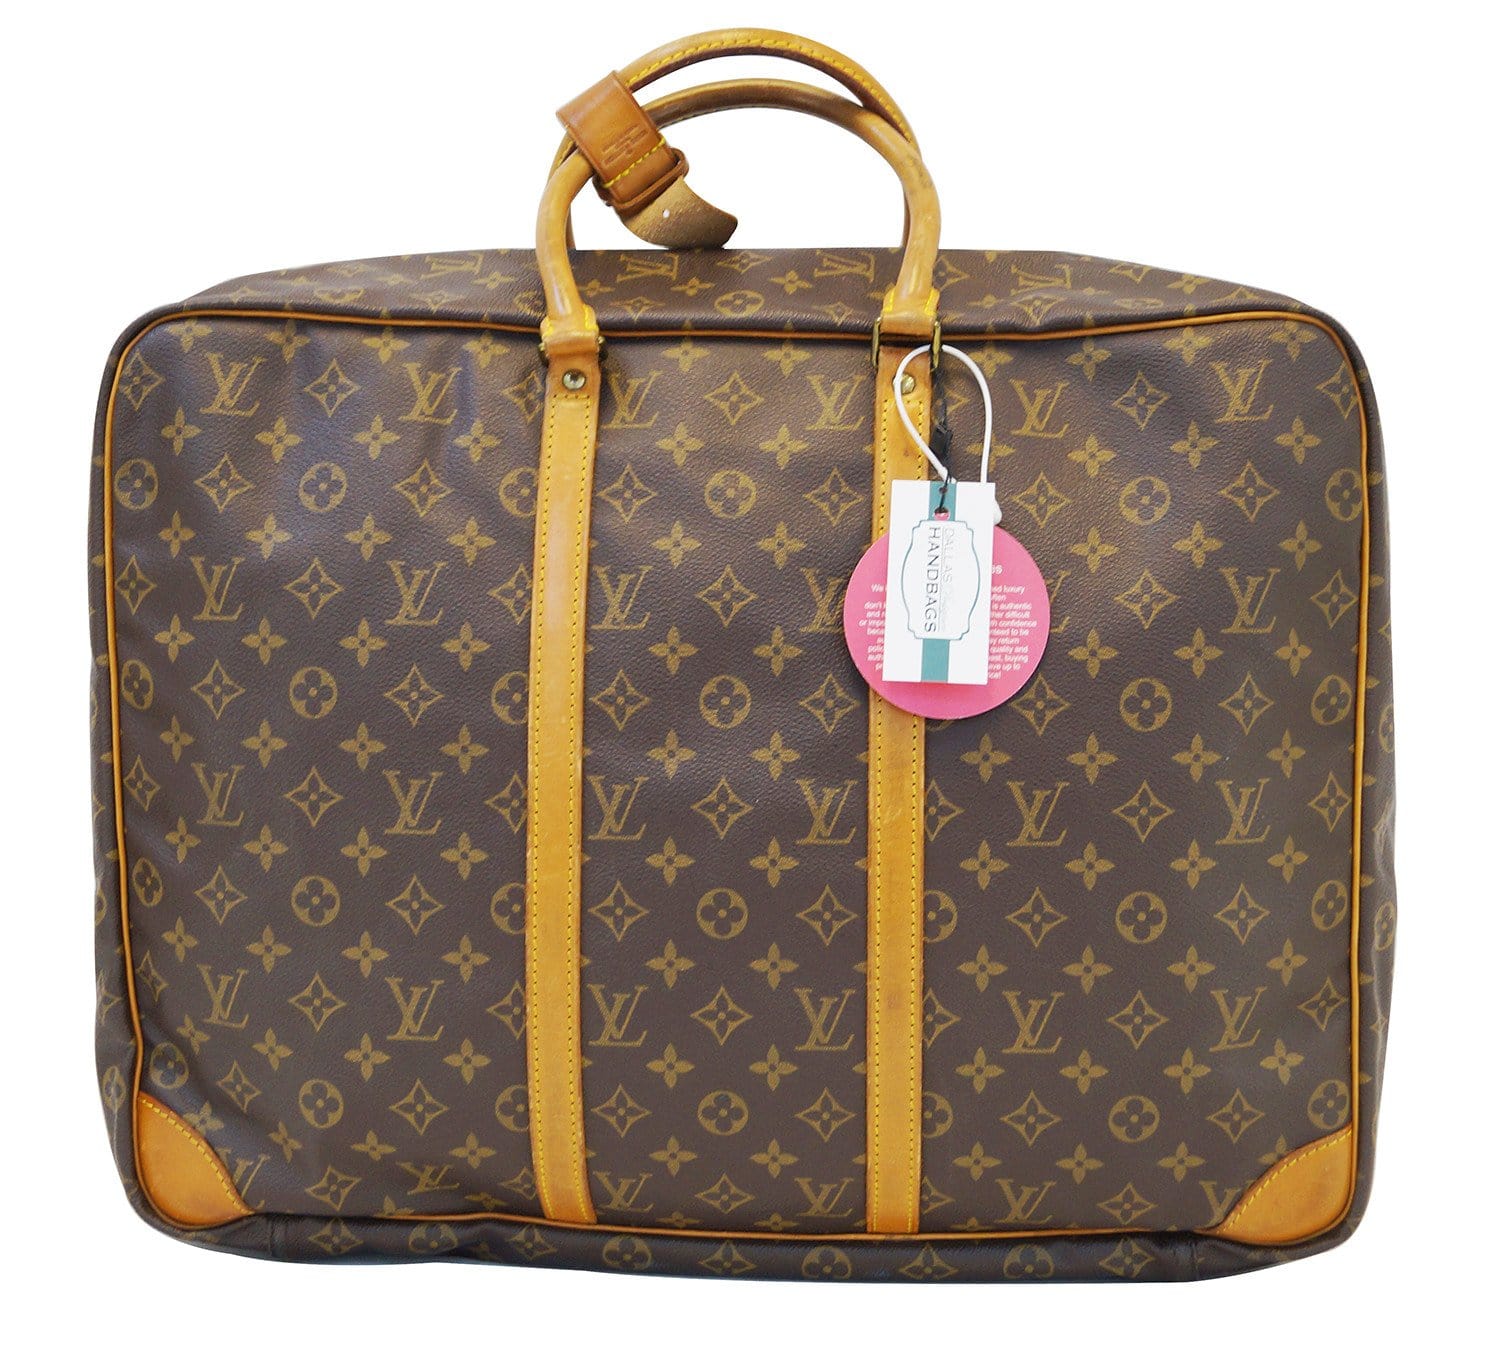 Louis Vuitton Logo Monogram Suitcase Colors